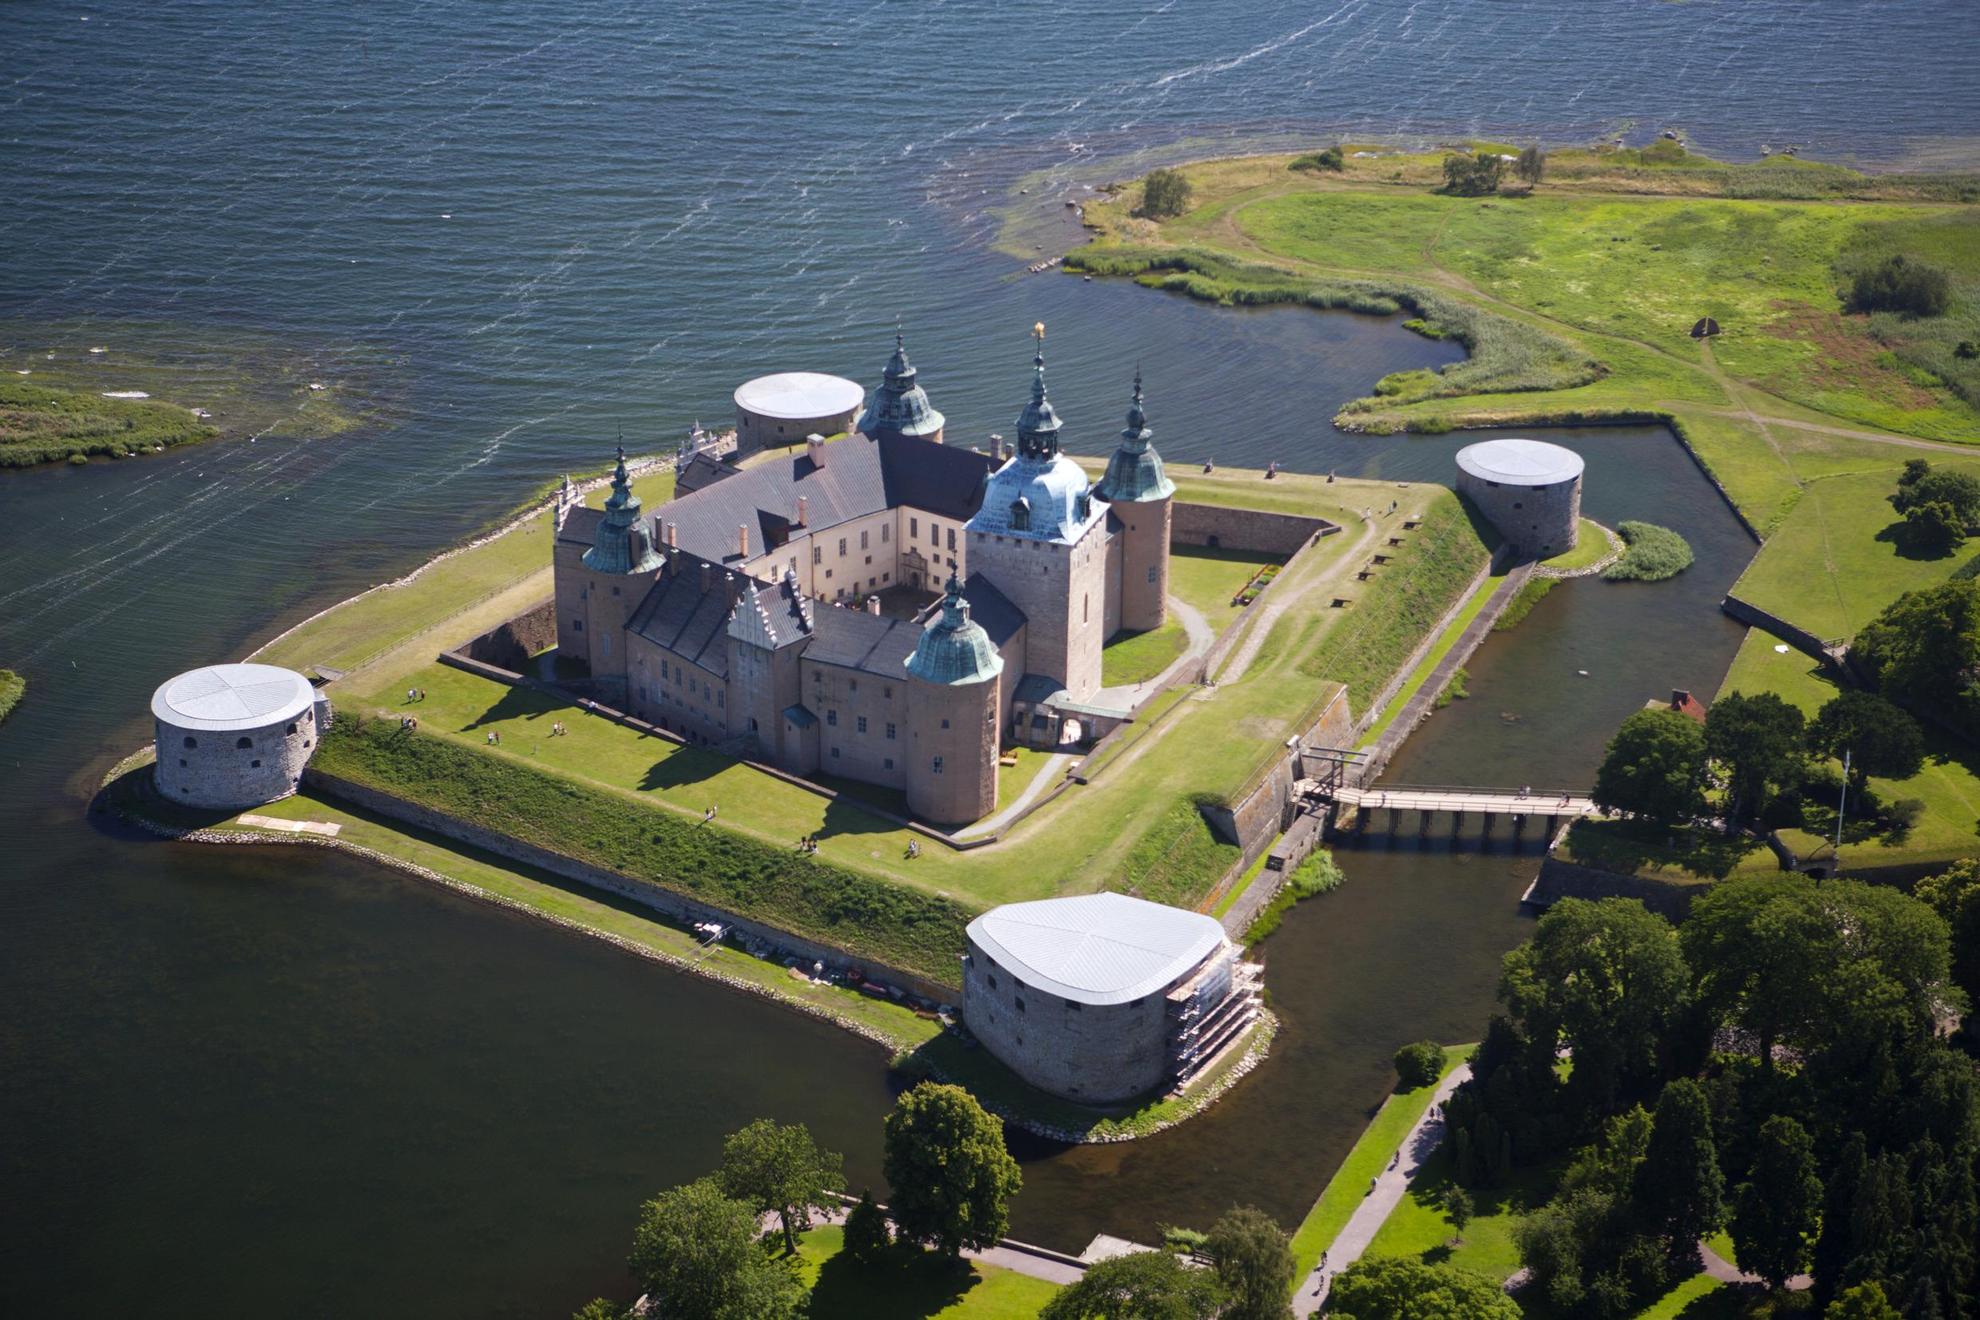 Luftaufnahme von Schloss Kalmar auf einer kleinen Insel, umgeben von Wasser mit einer kleinen Brücke zum Festland.